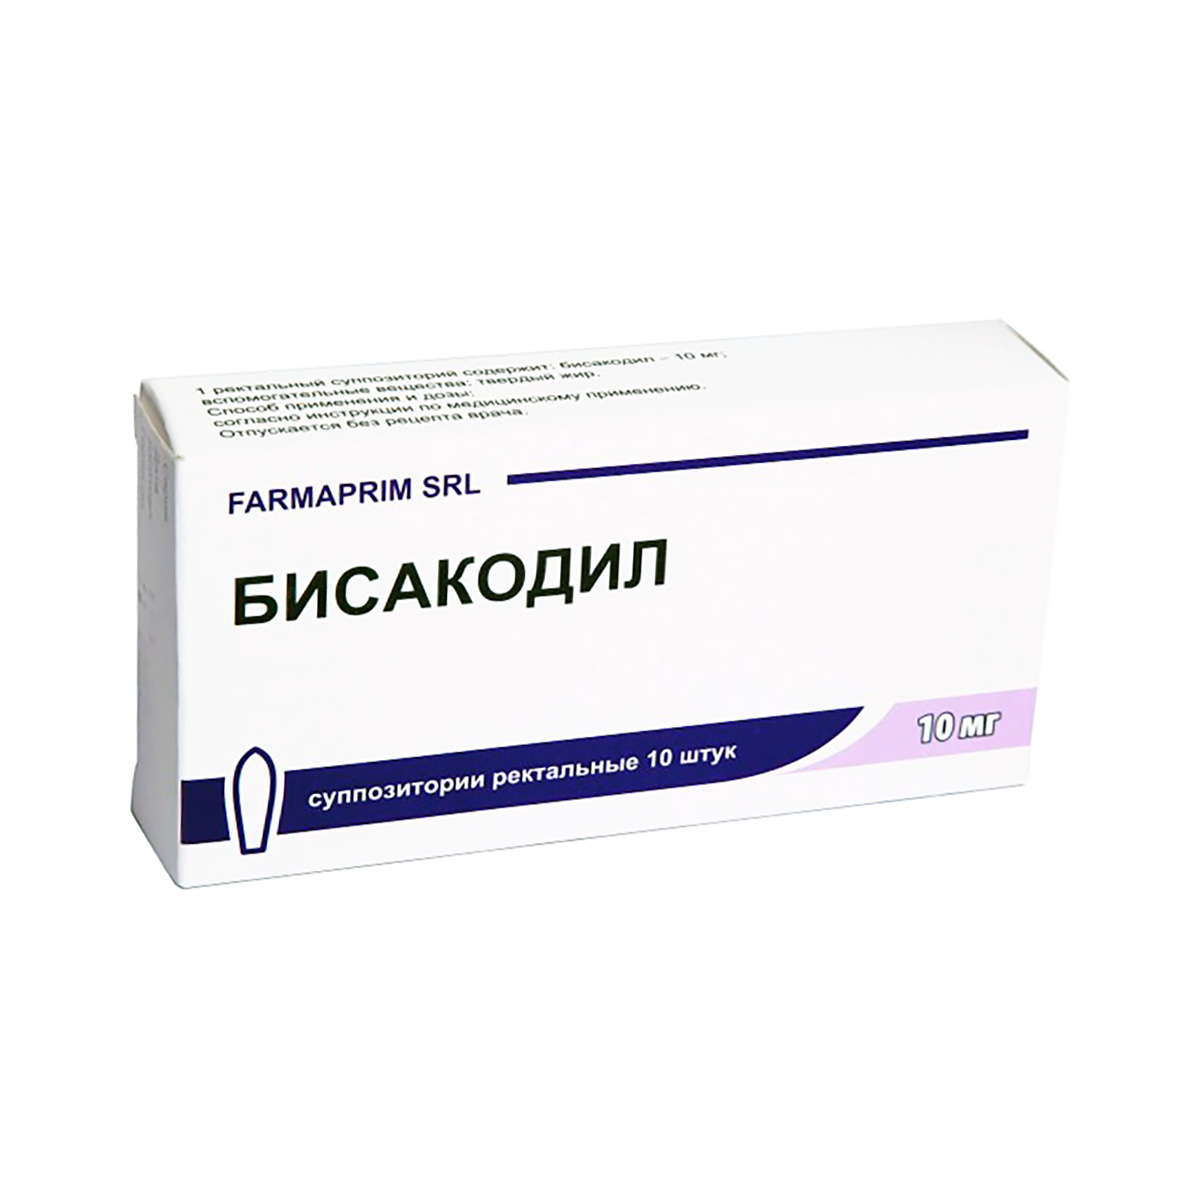 Бисакодил 10 мг суппозитории ректальные 10 шт